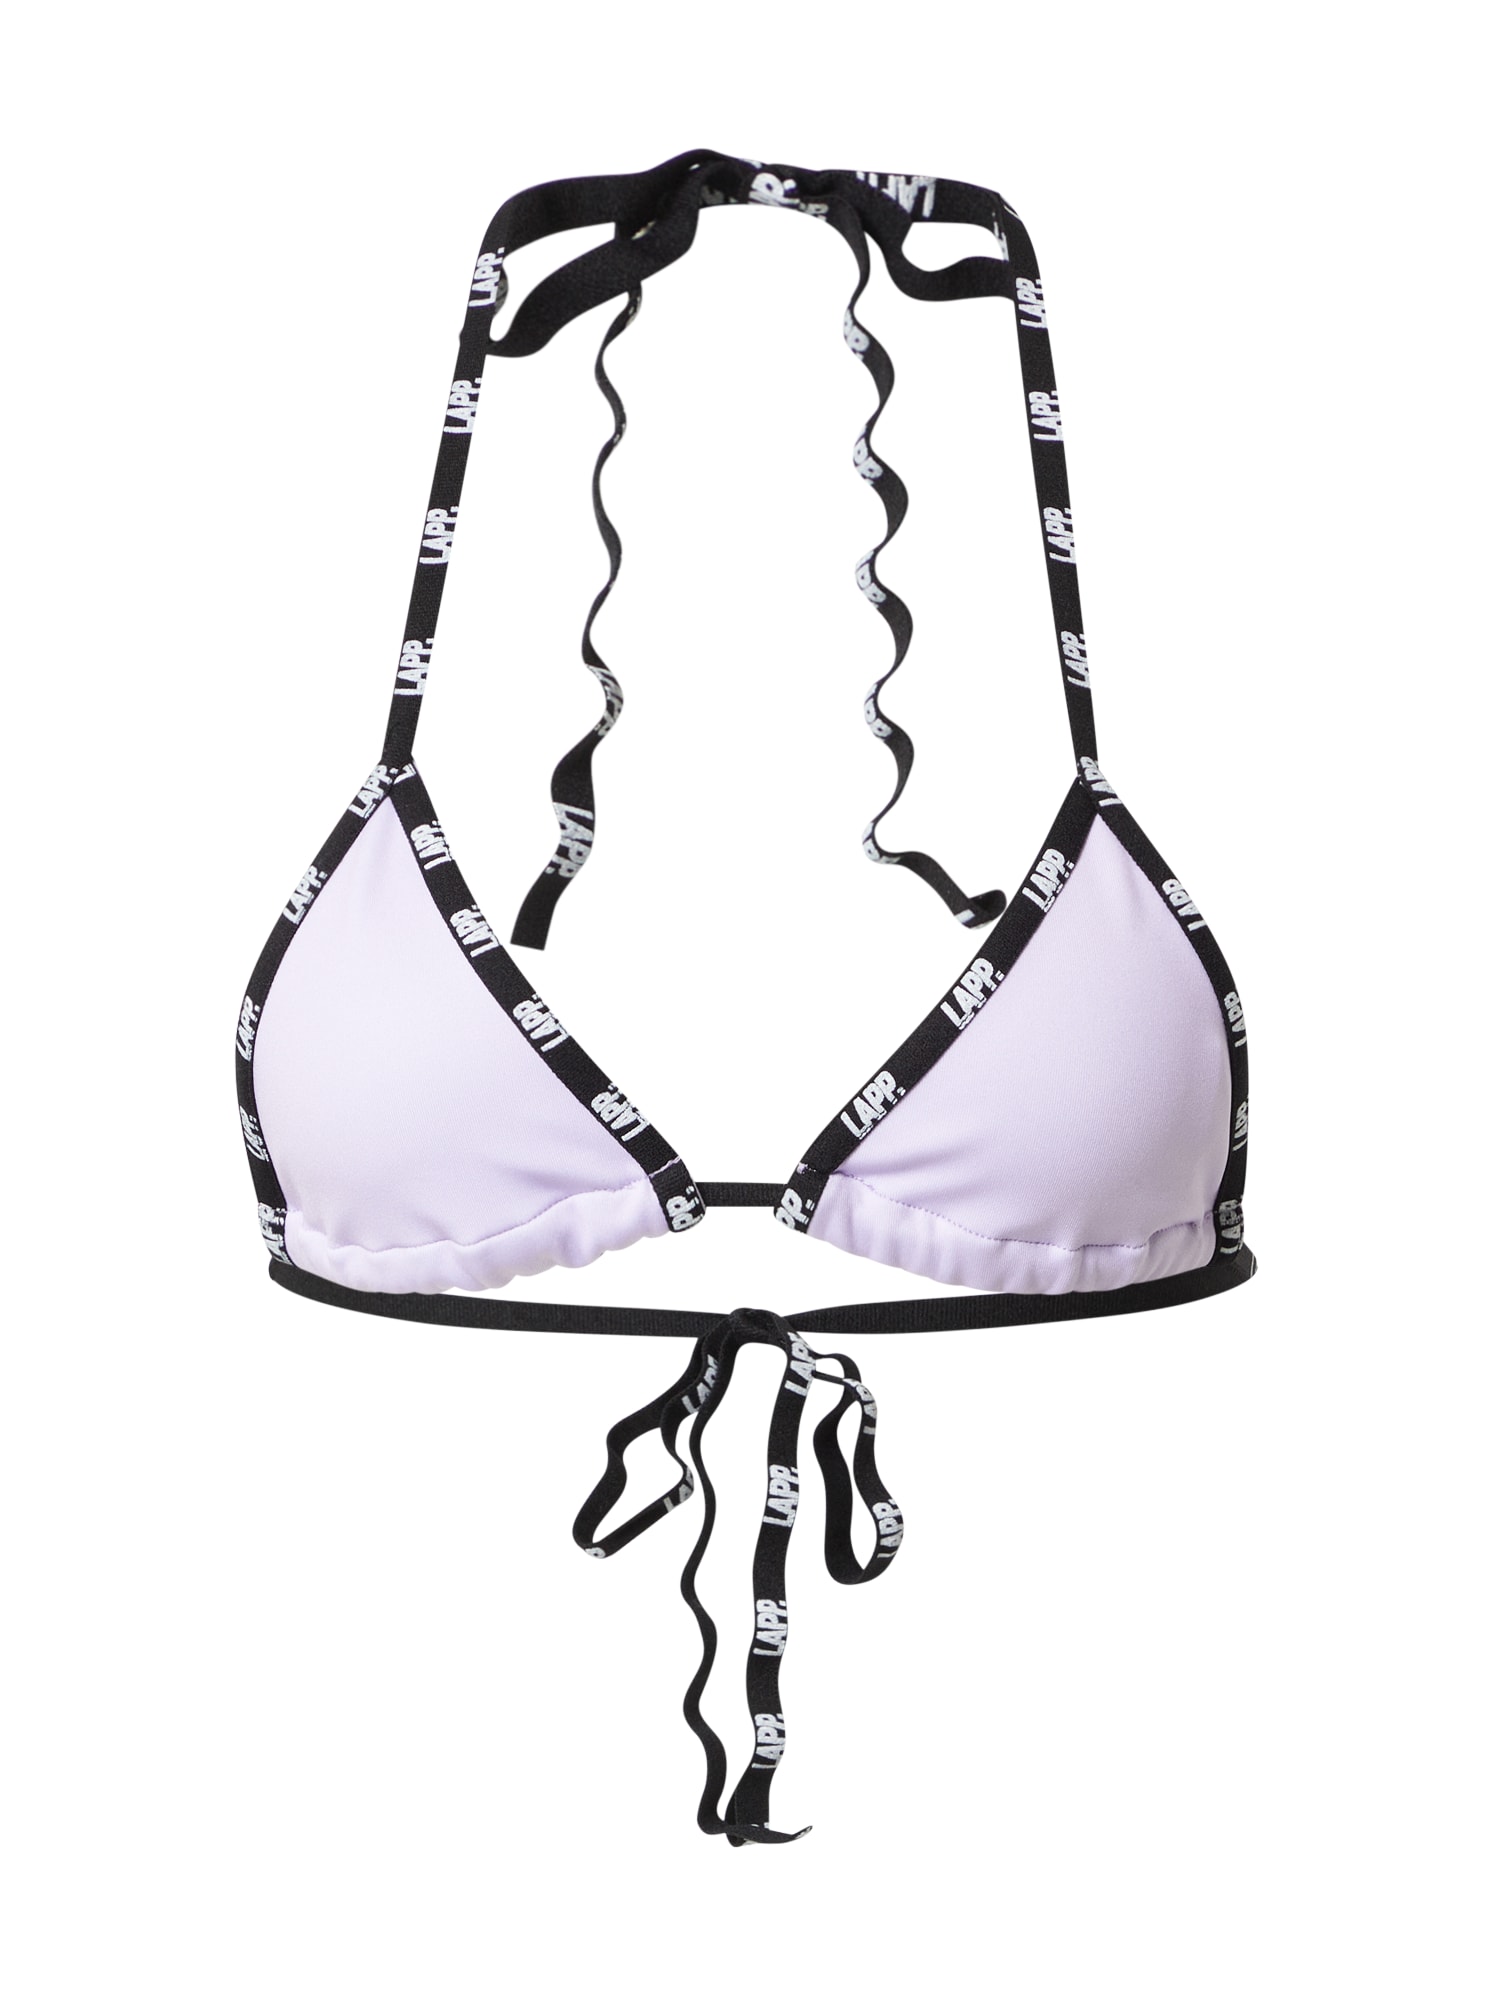 Lapp the Brand Sportinio bikinio viršutinė dalis šviesiai violetinė / juoda / balta